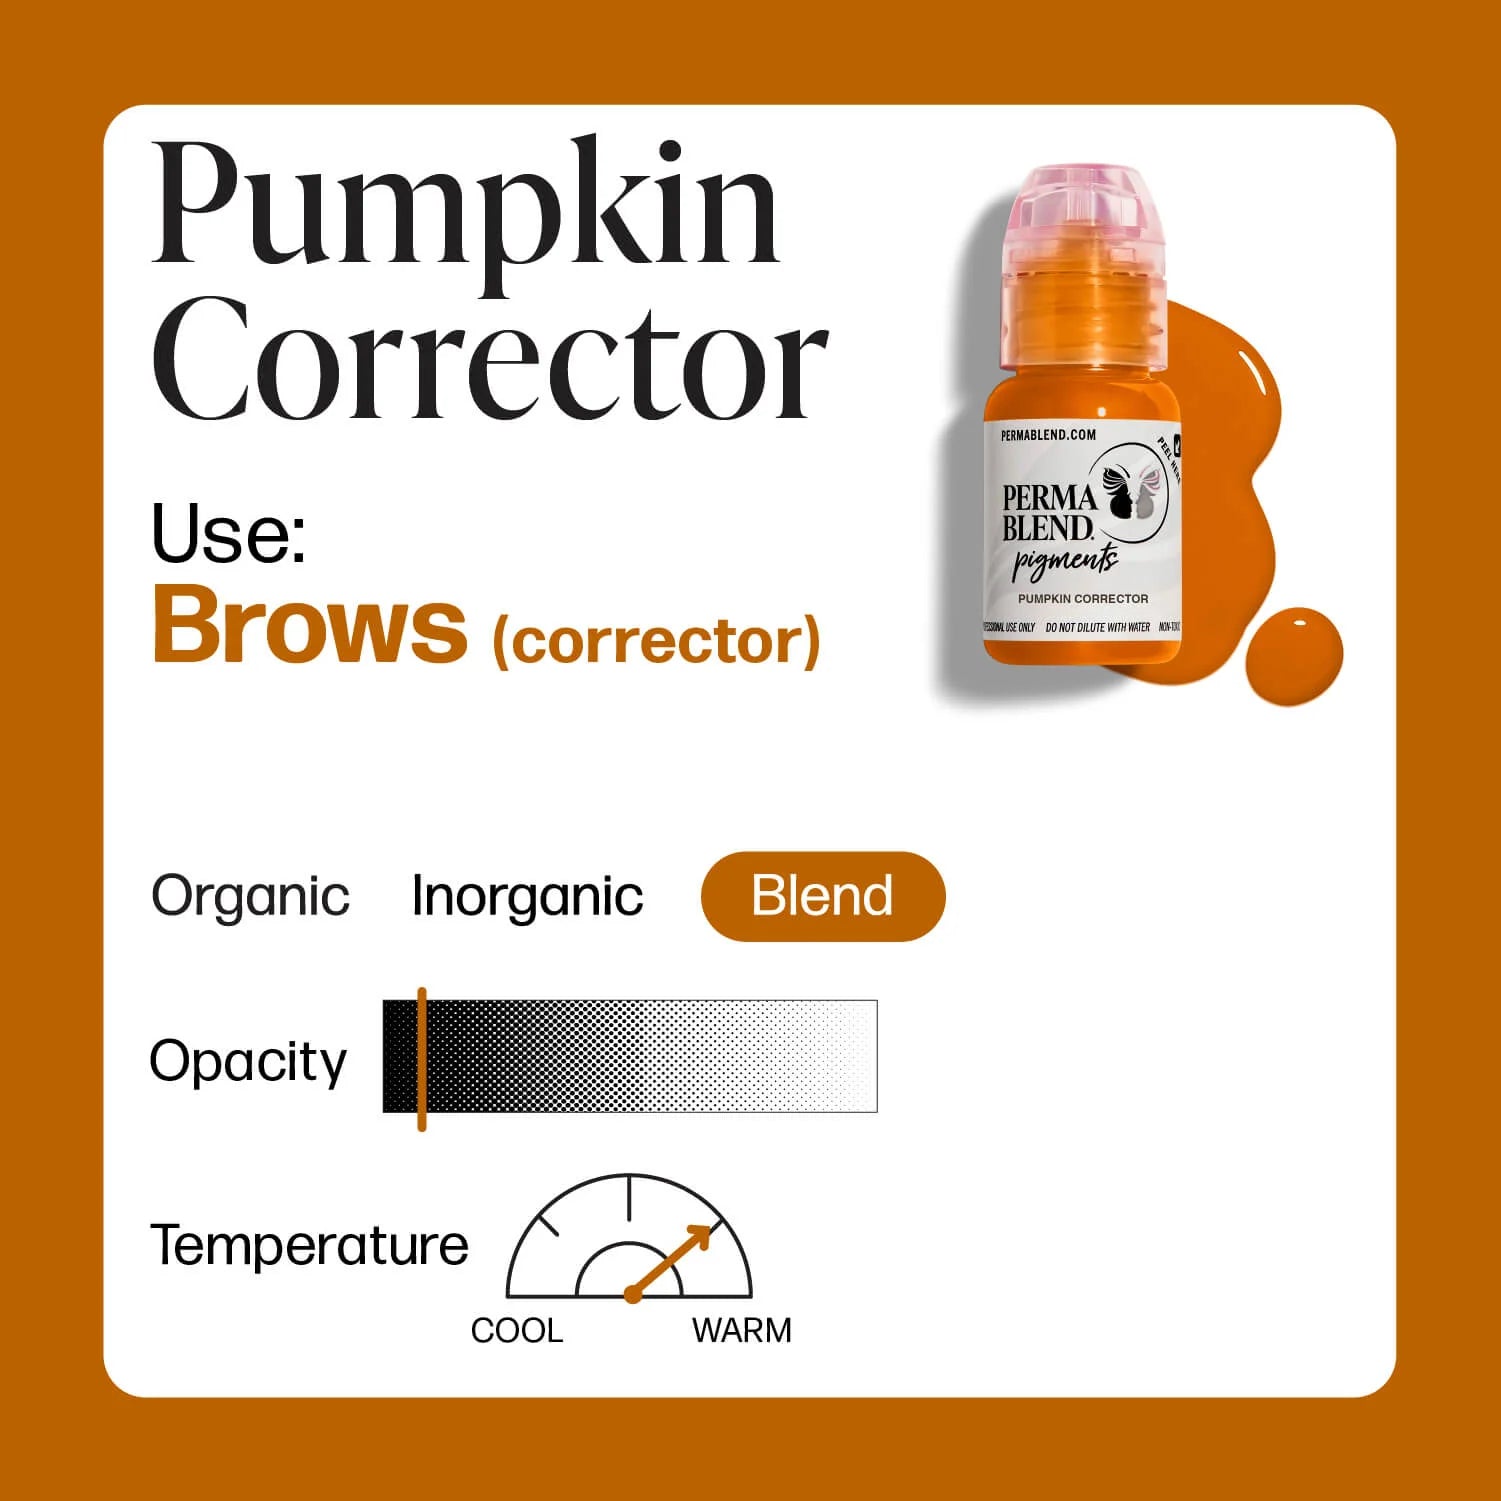 Perma Blend - Pumpkin Corrector